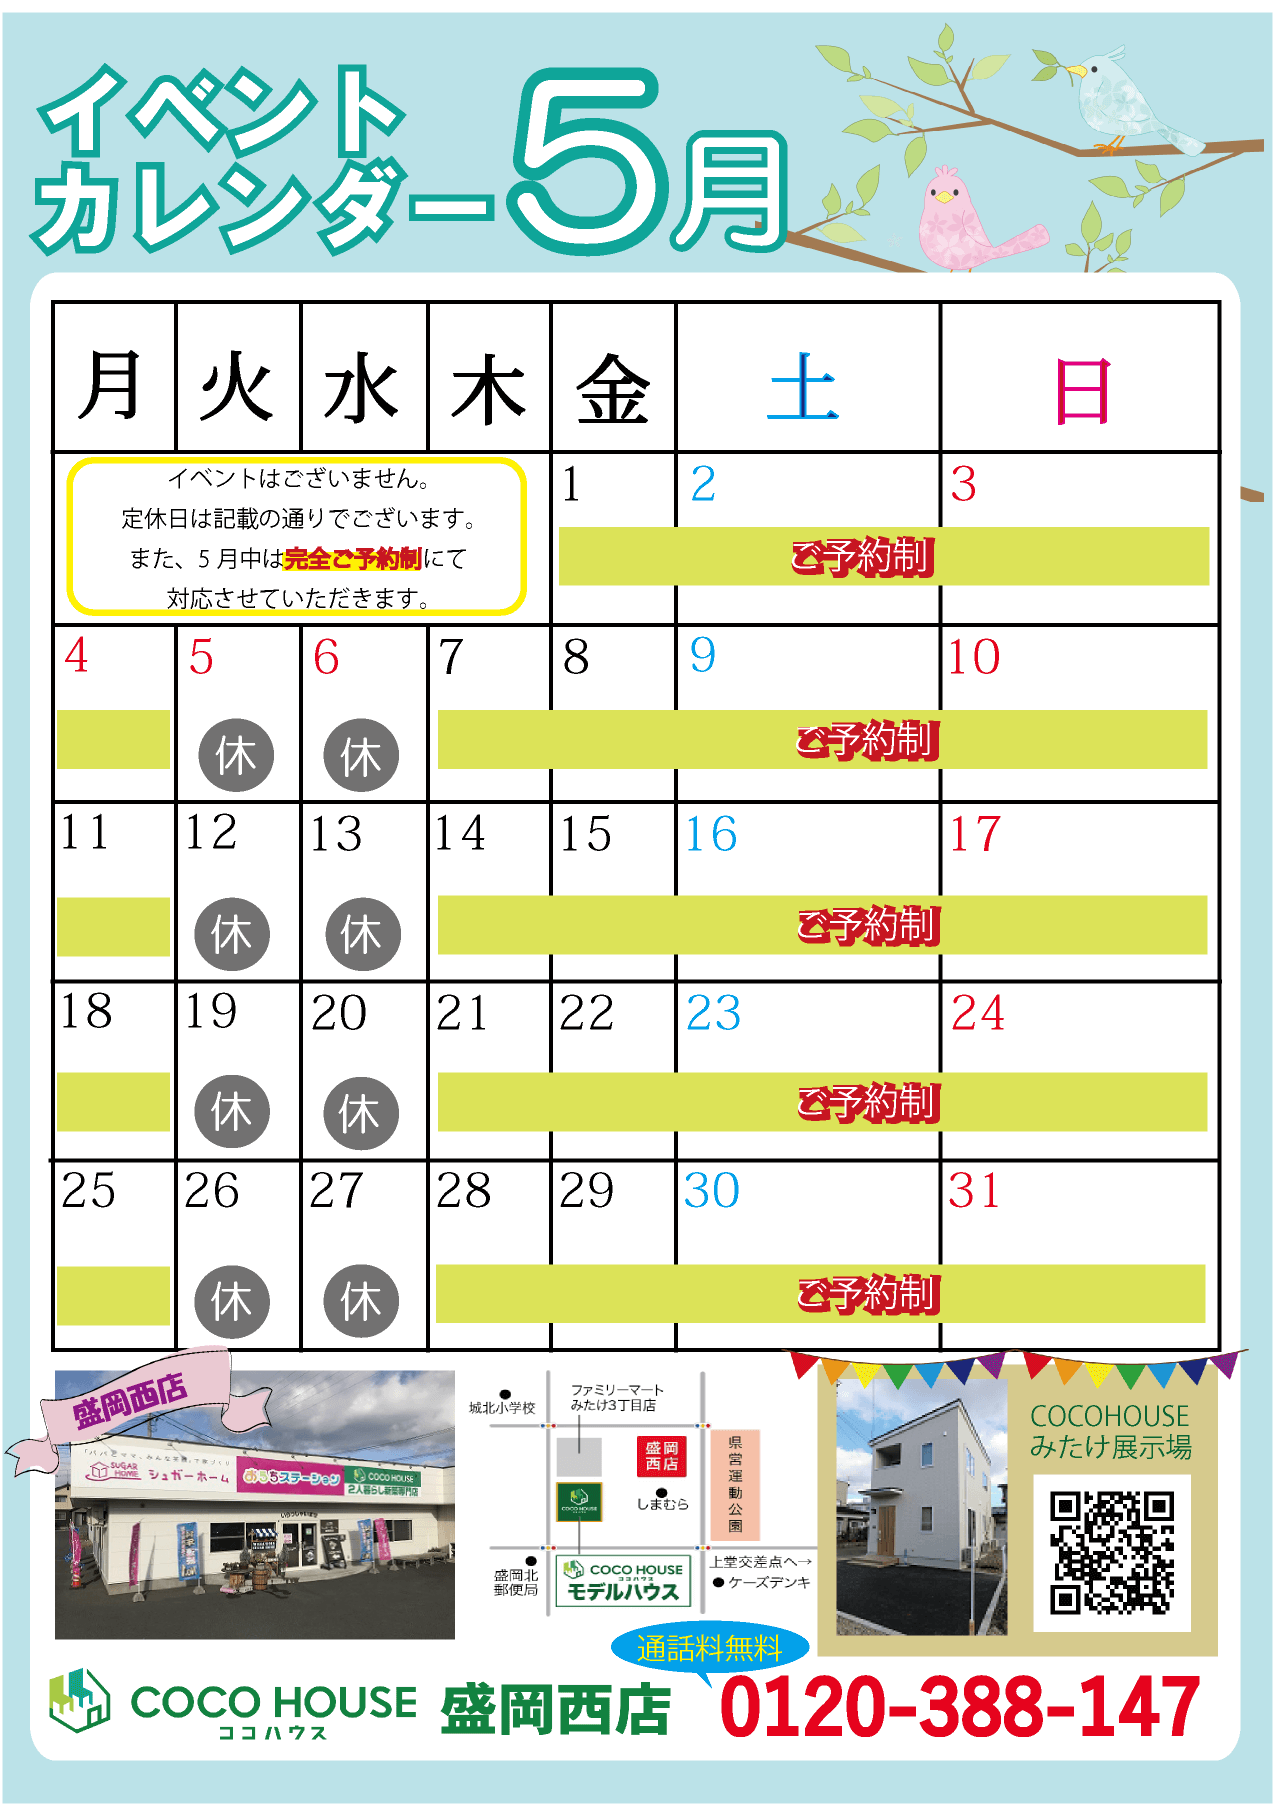 【盛岡西店】5月イベントカレンダー